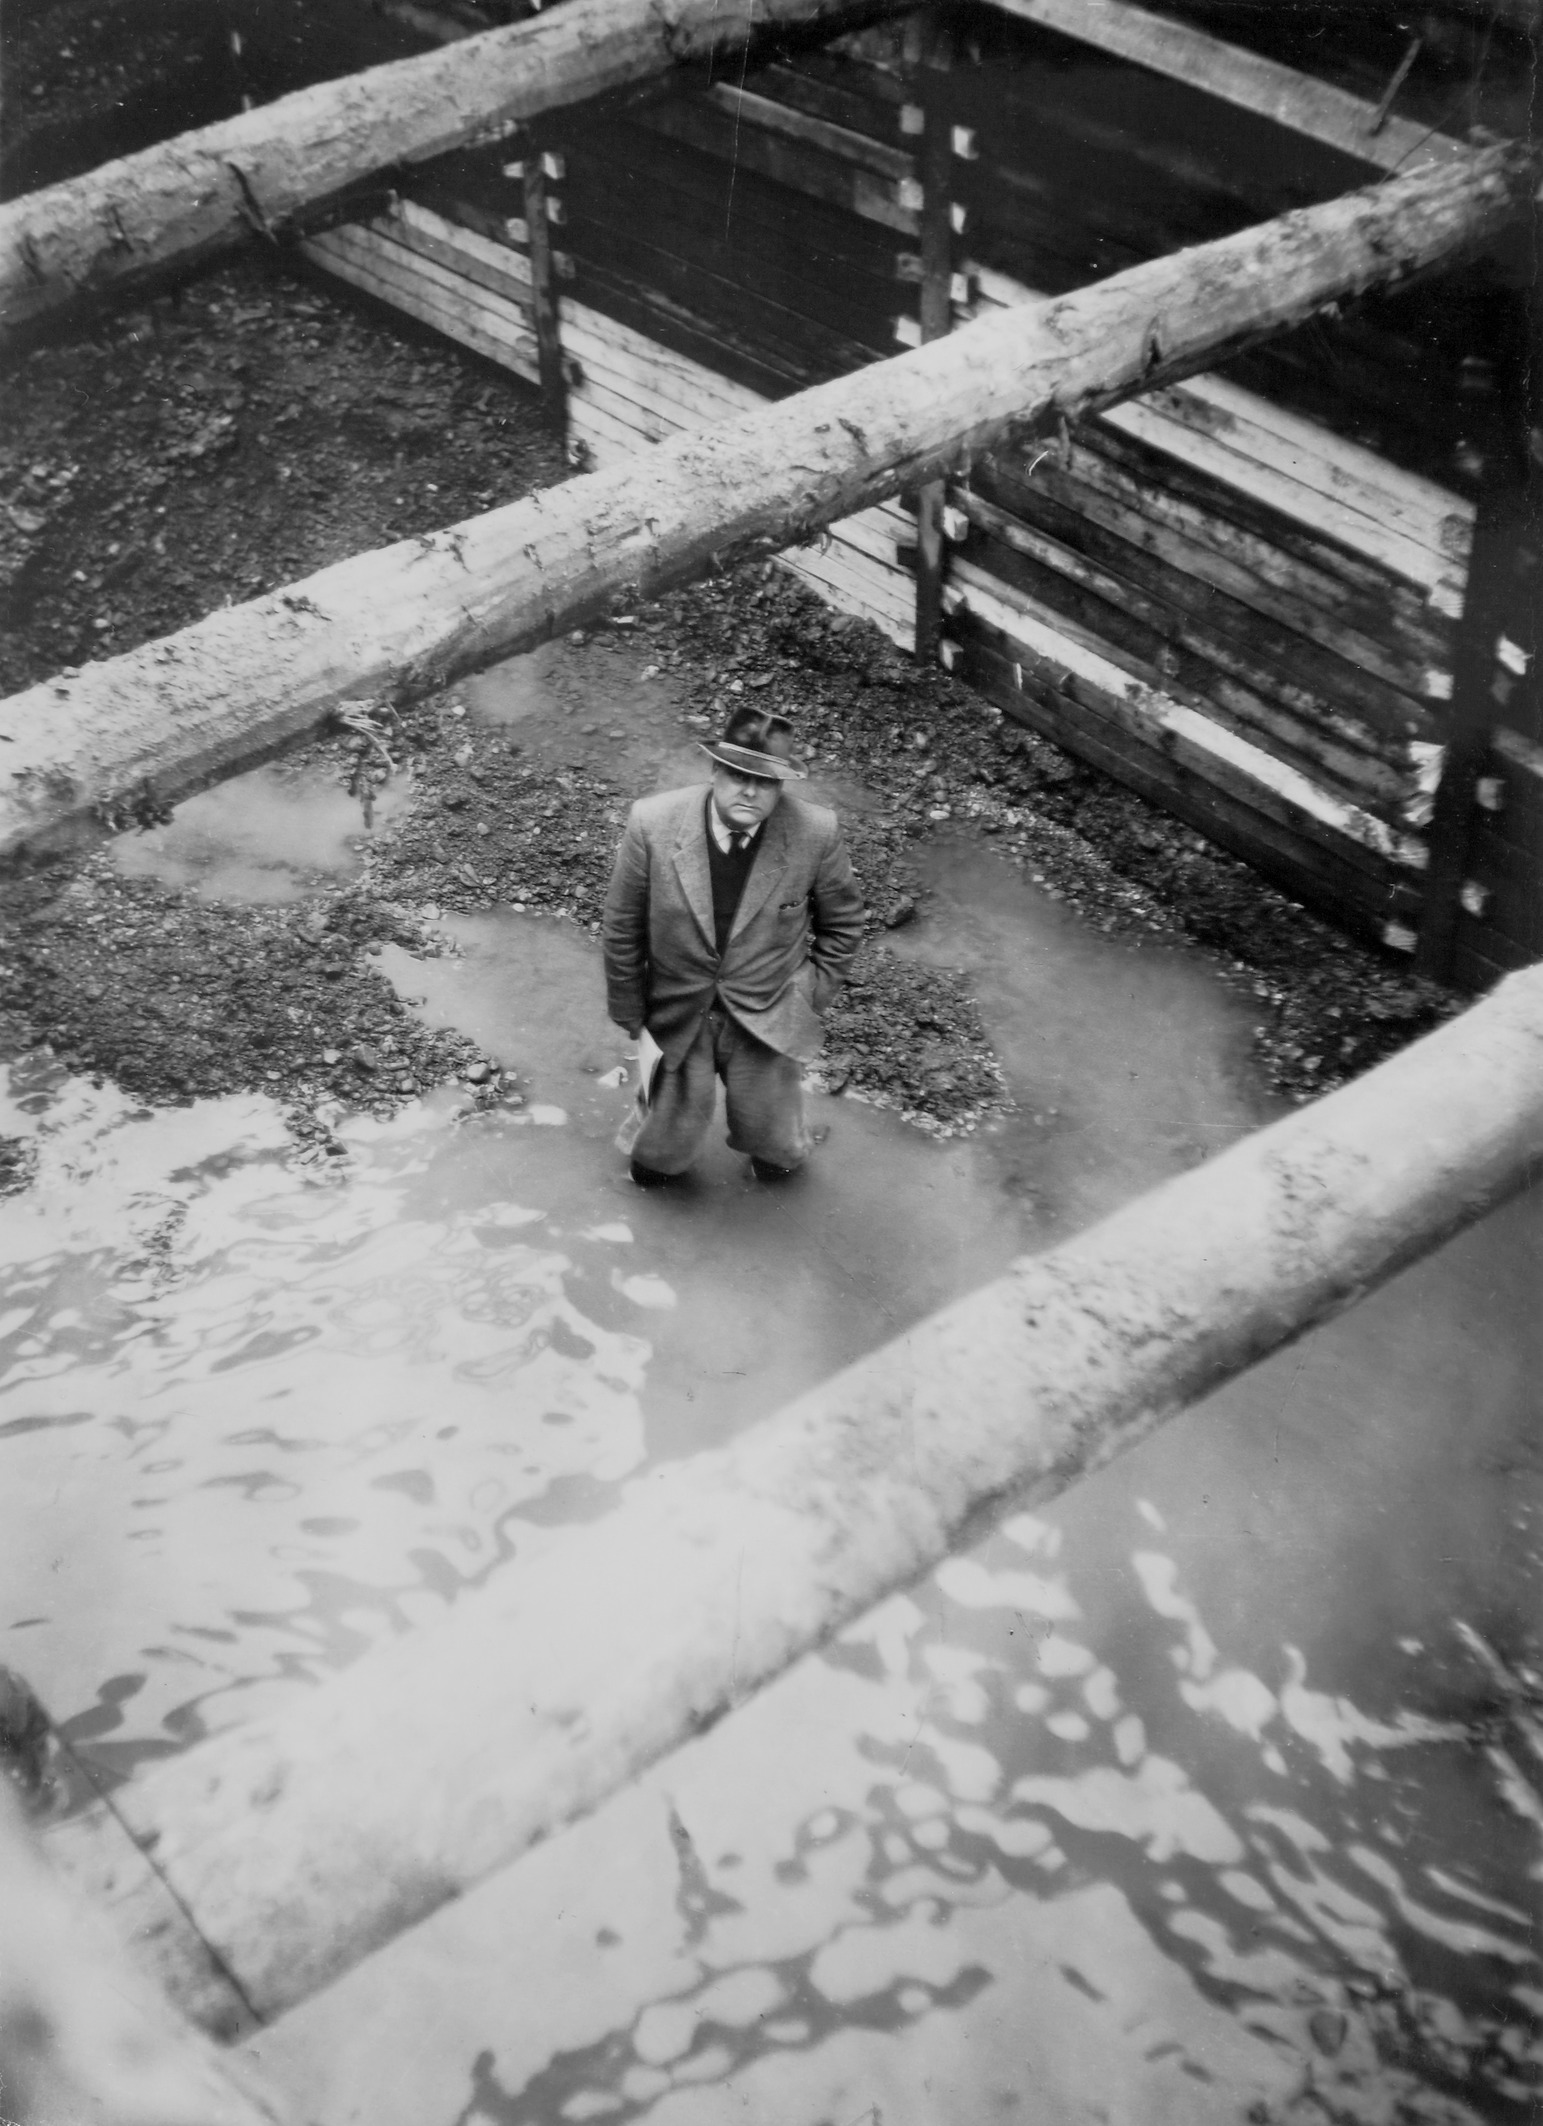 1960: Ingeneer standing in the mud. 